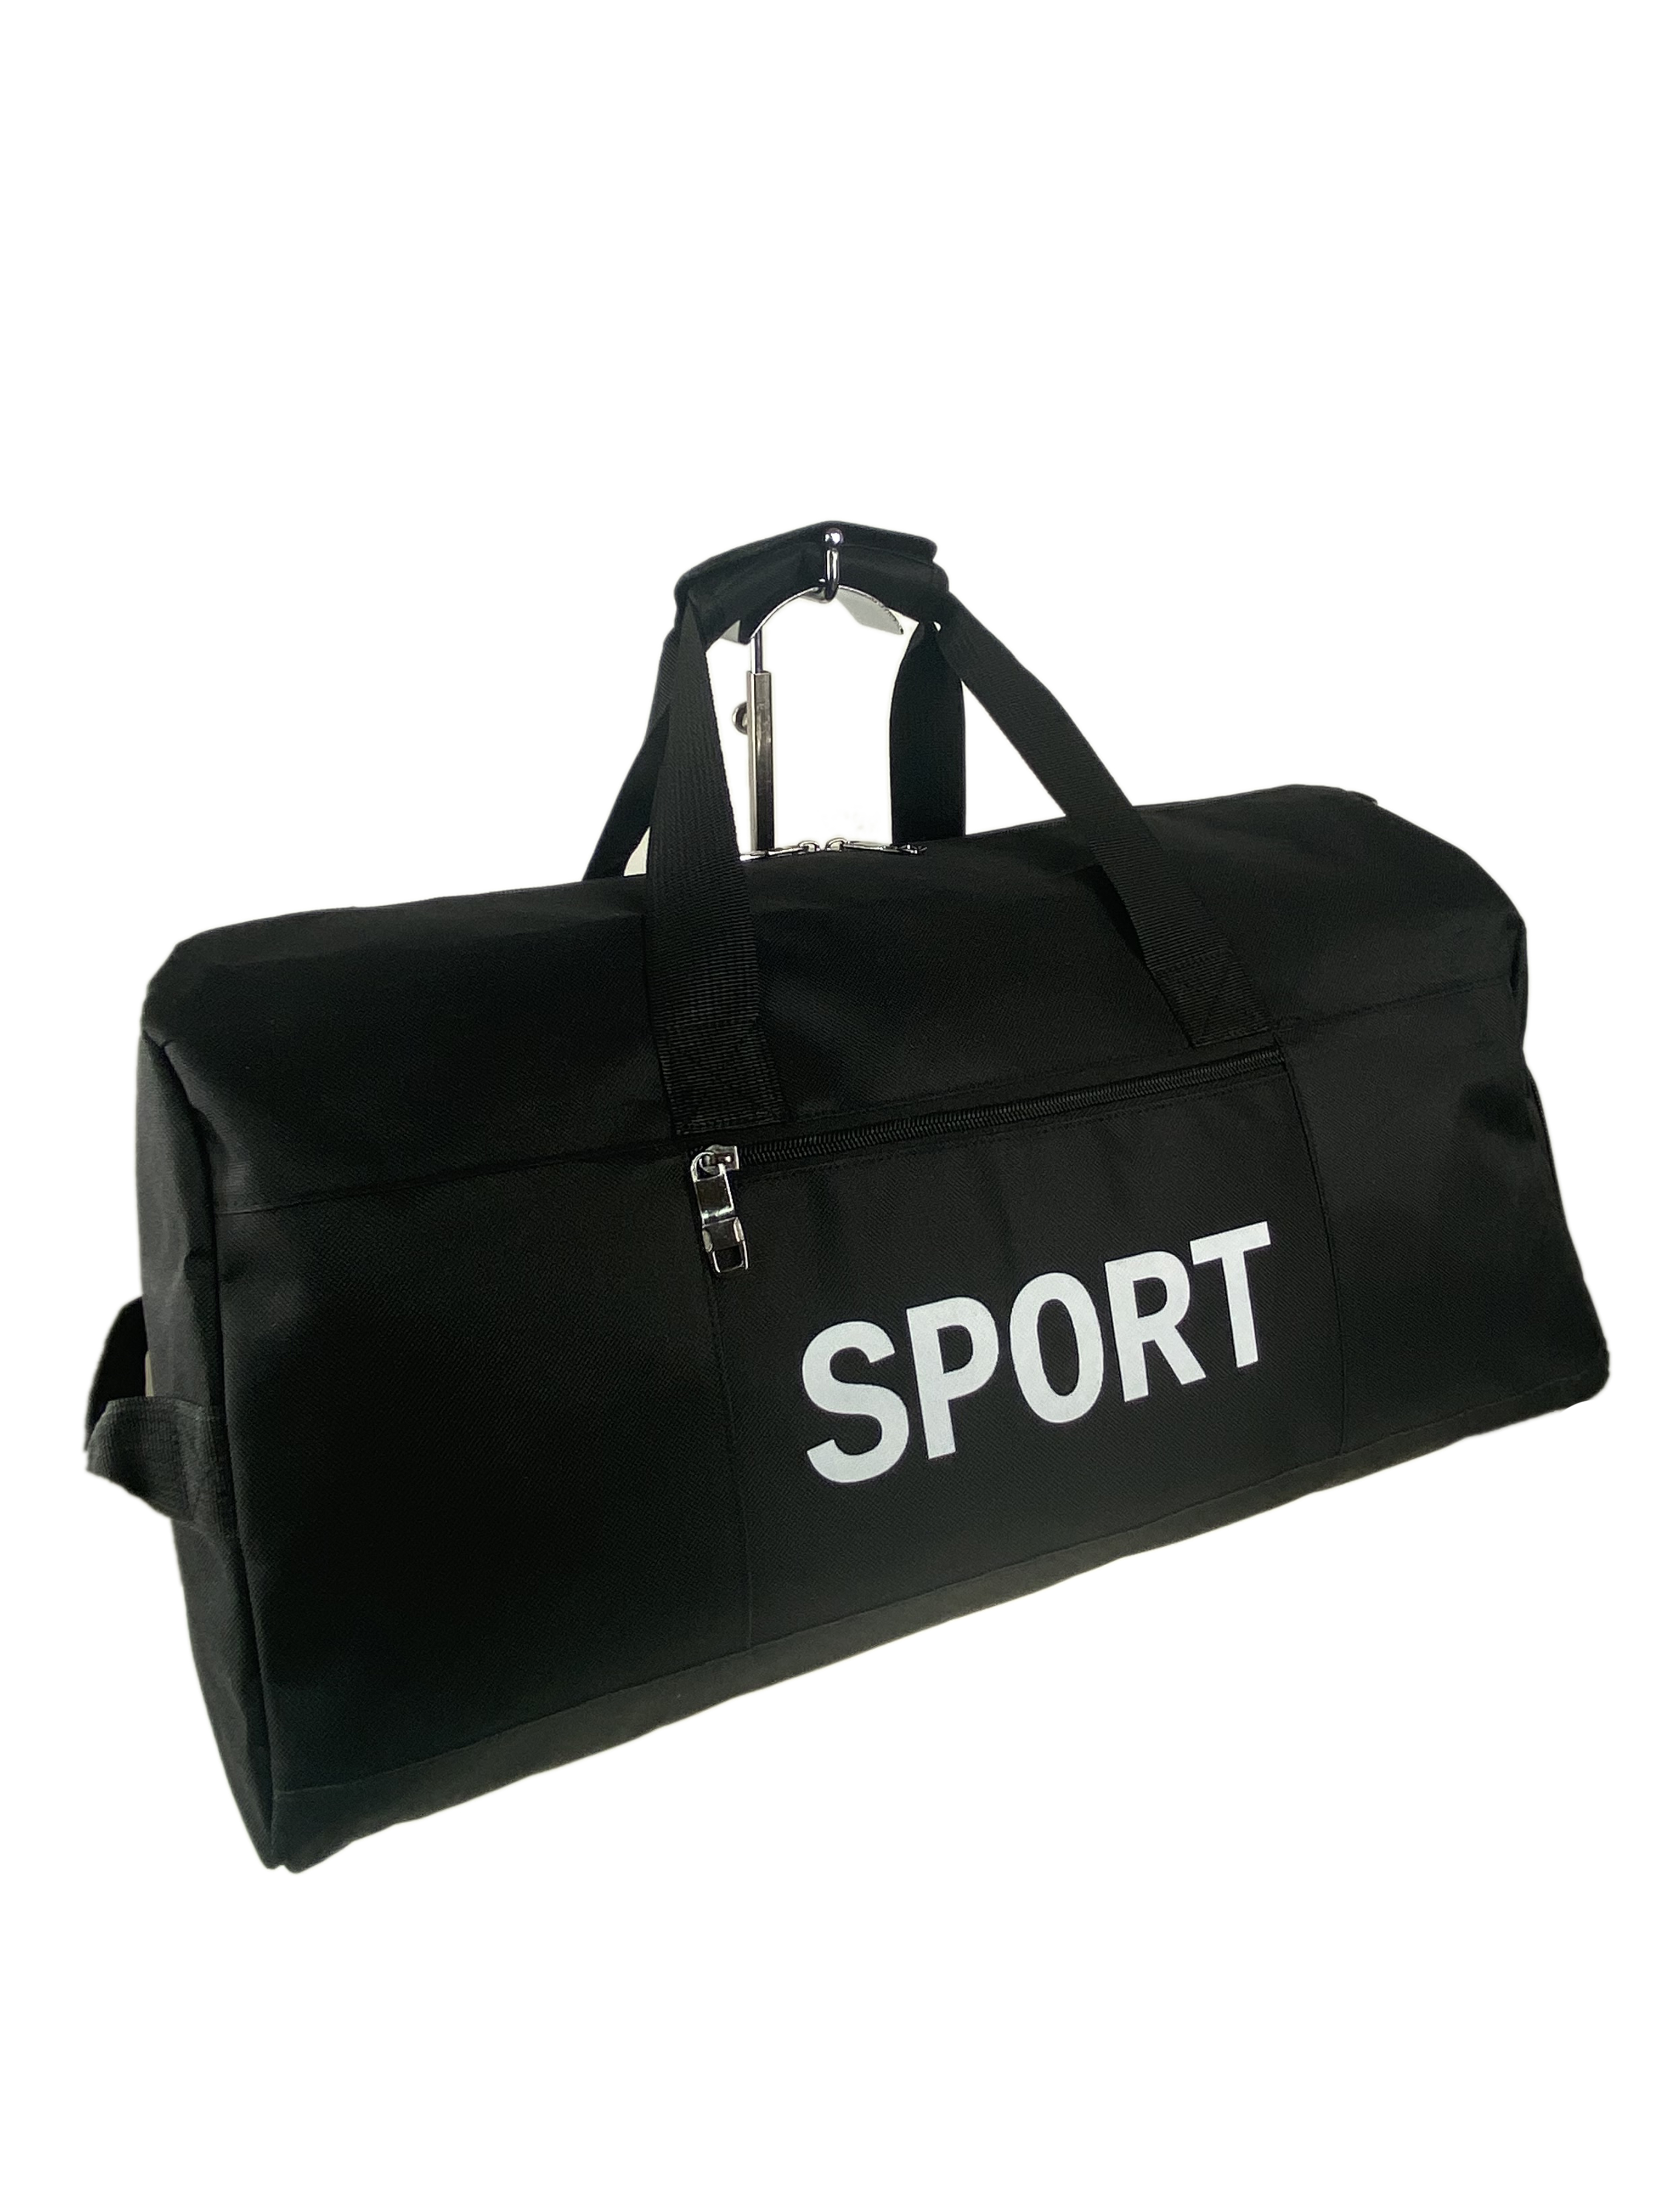 Дорожно-спортивная сумка из текстиля, цвет черный